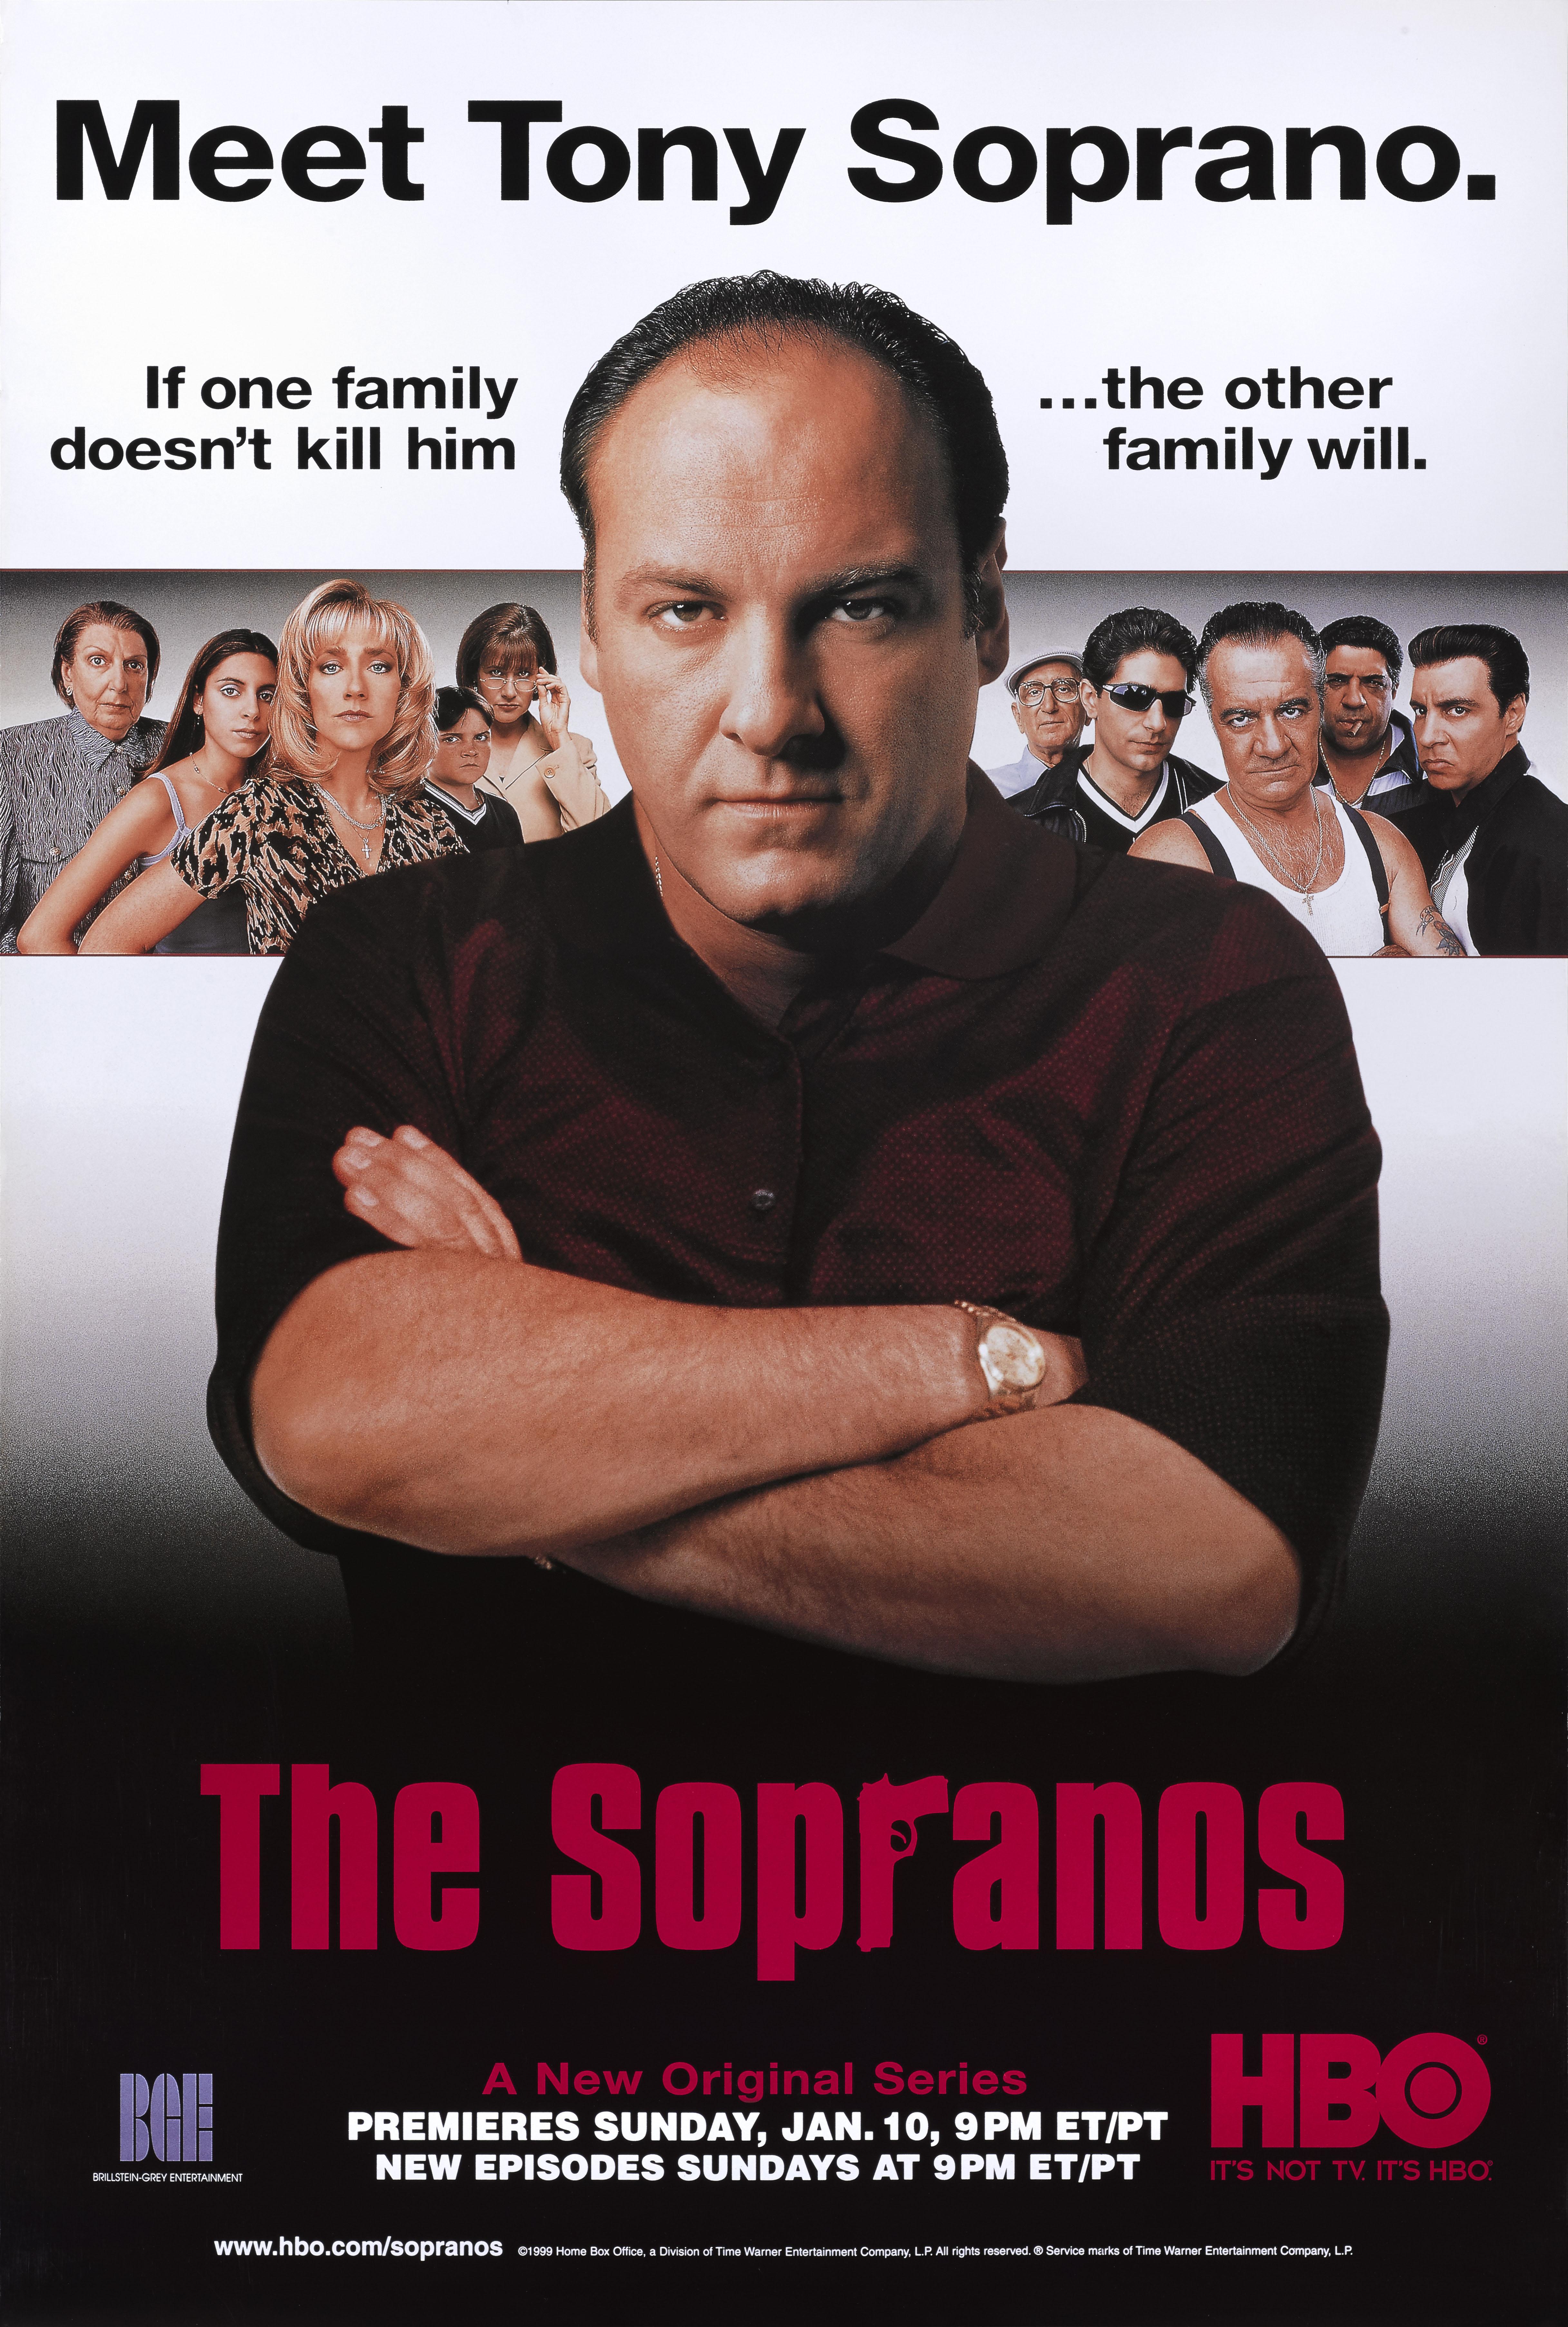 Original US-Plakat für The Sopranos.
Die Sendung wurde am 10. Januar 1999 erstmals auf HBO ausgestrahlt. Die Serie lief bis 2007 mit 86 Episoden.
Das Plakat wurde verwendet, um für die Ausstrahlung der Serie auf HBO zu werben 
Er ist ungefaltet